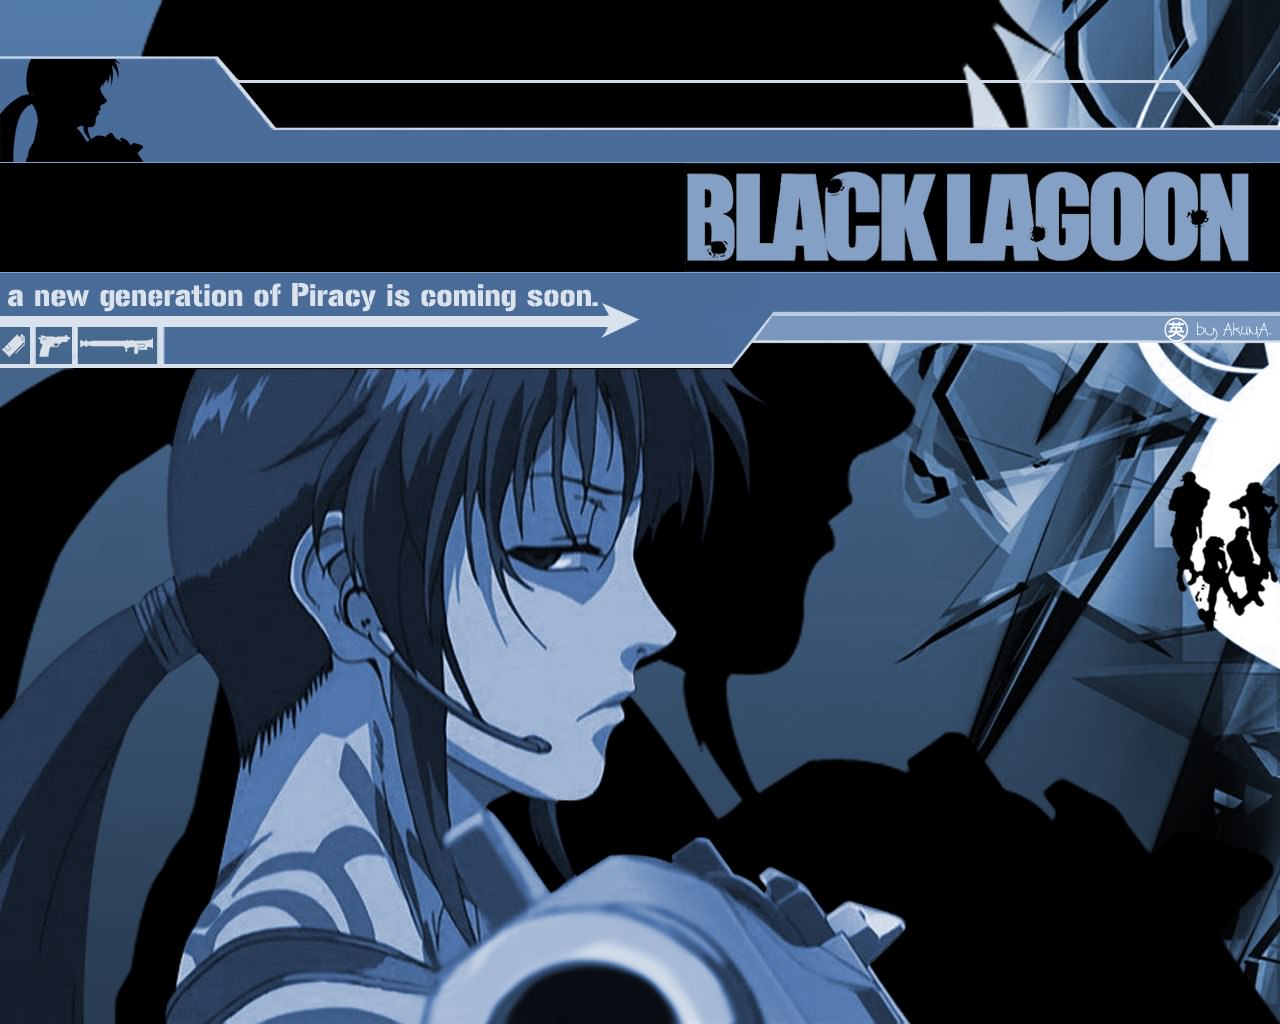 Black Lagoon Piracy next Gen'